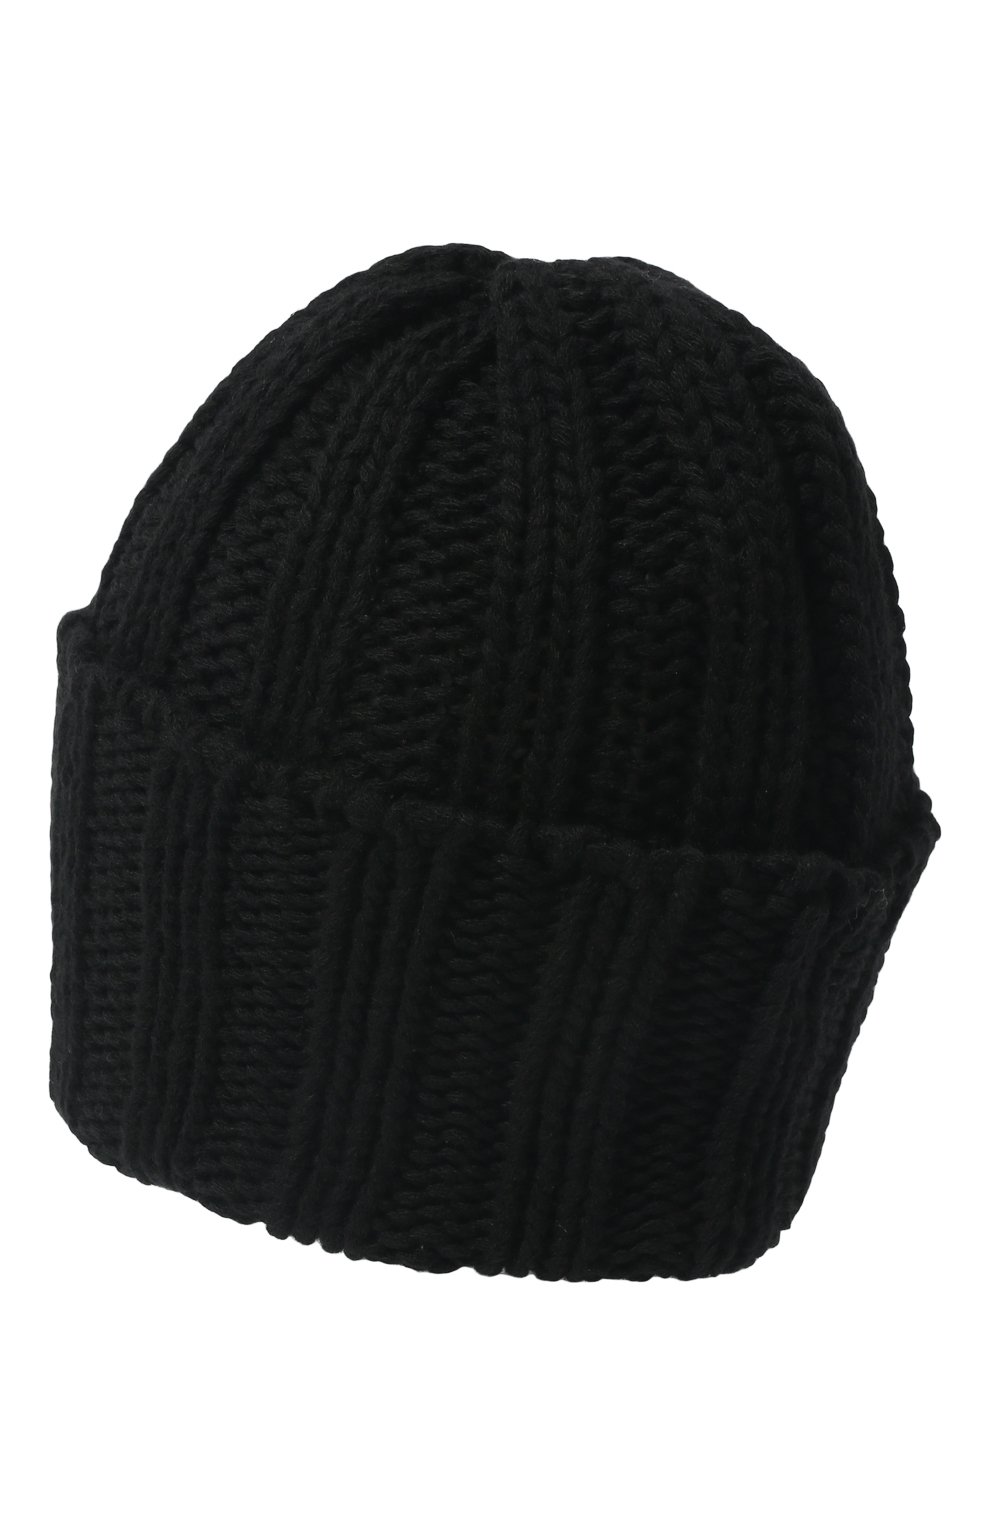 Мужская кашемировая шапка INVERNI черного цвета, арт. 1128 CM | Фото 2 (Материал: Текстиль, Кашемир, Шерсть; Кросс-КТ: Трикотаж)